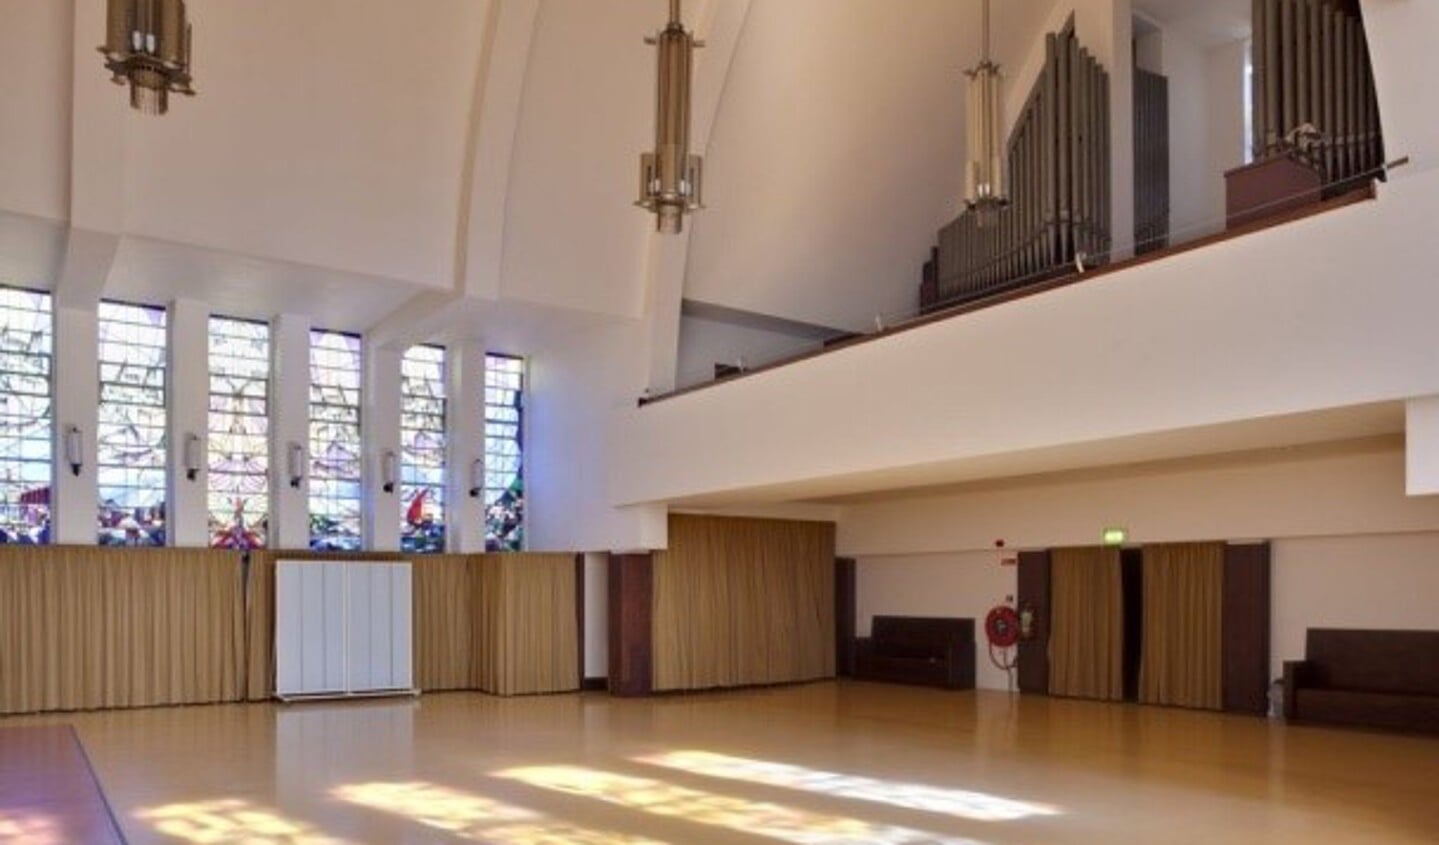 Het concert vindt plaats in de Pauluskerk te Oegstgeest.